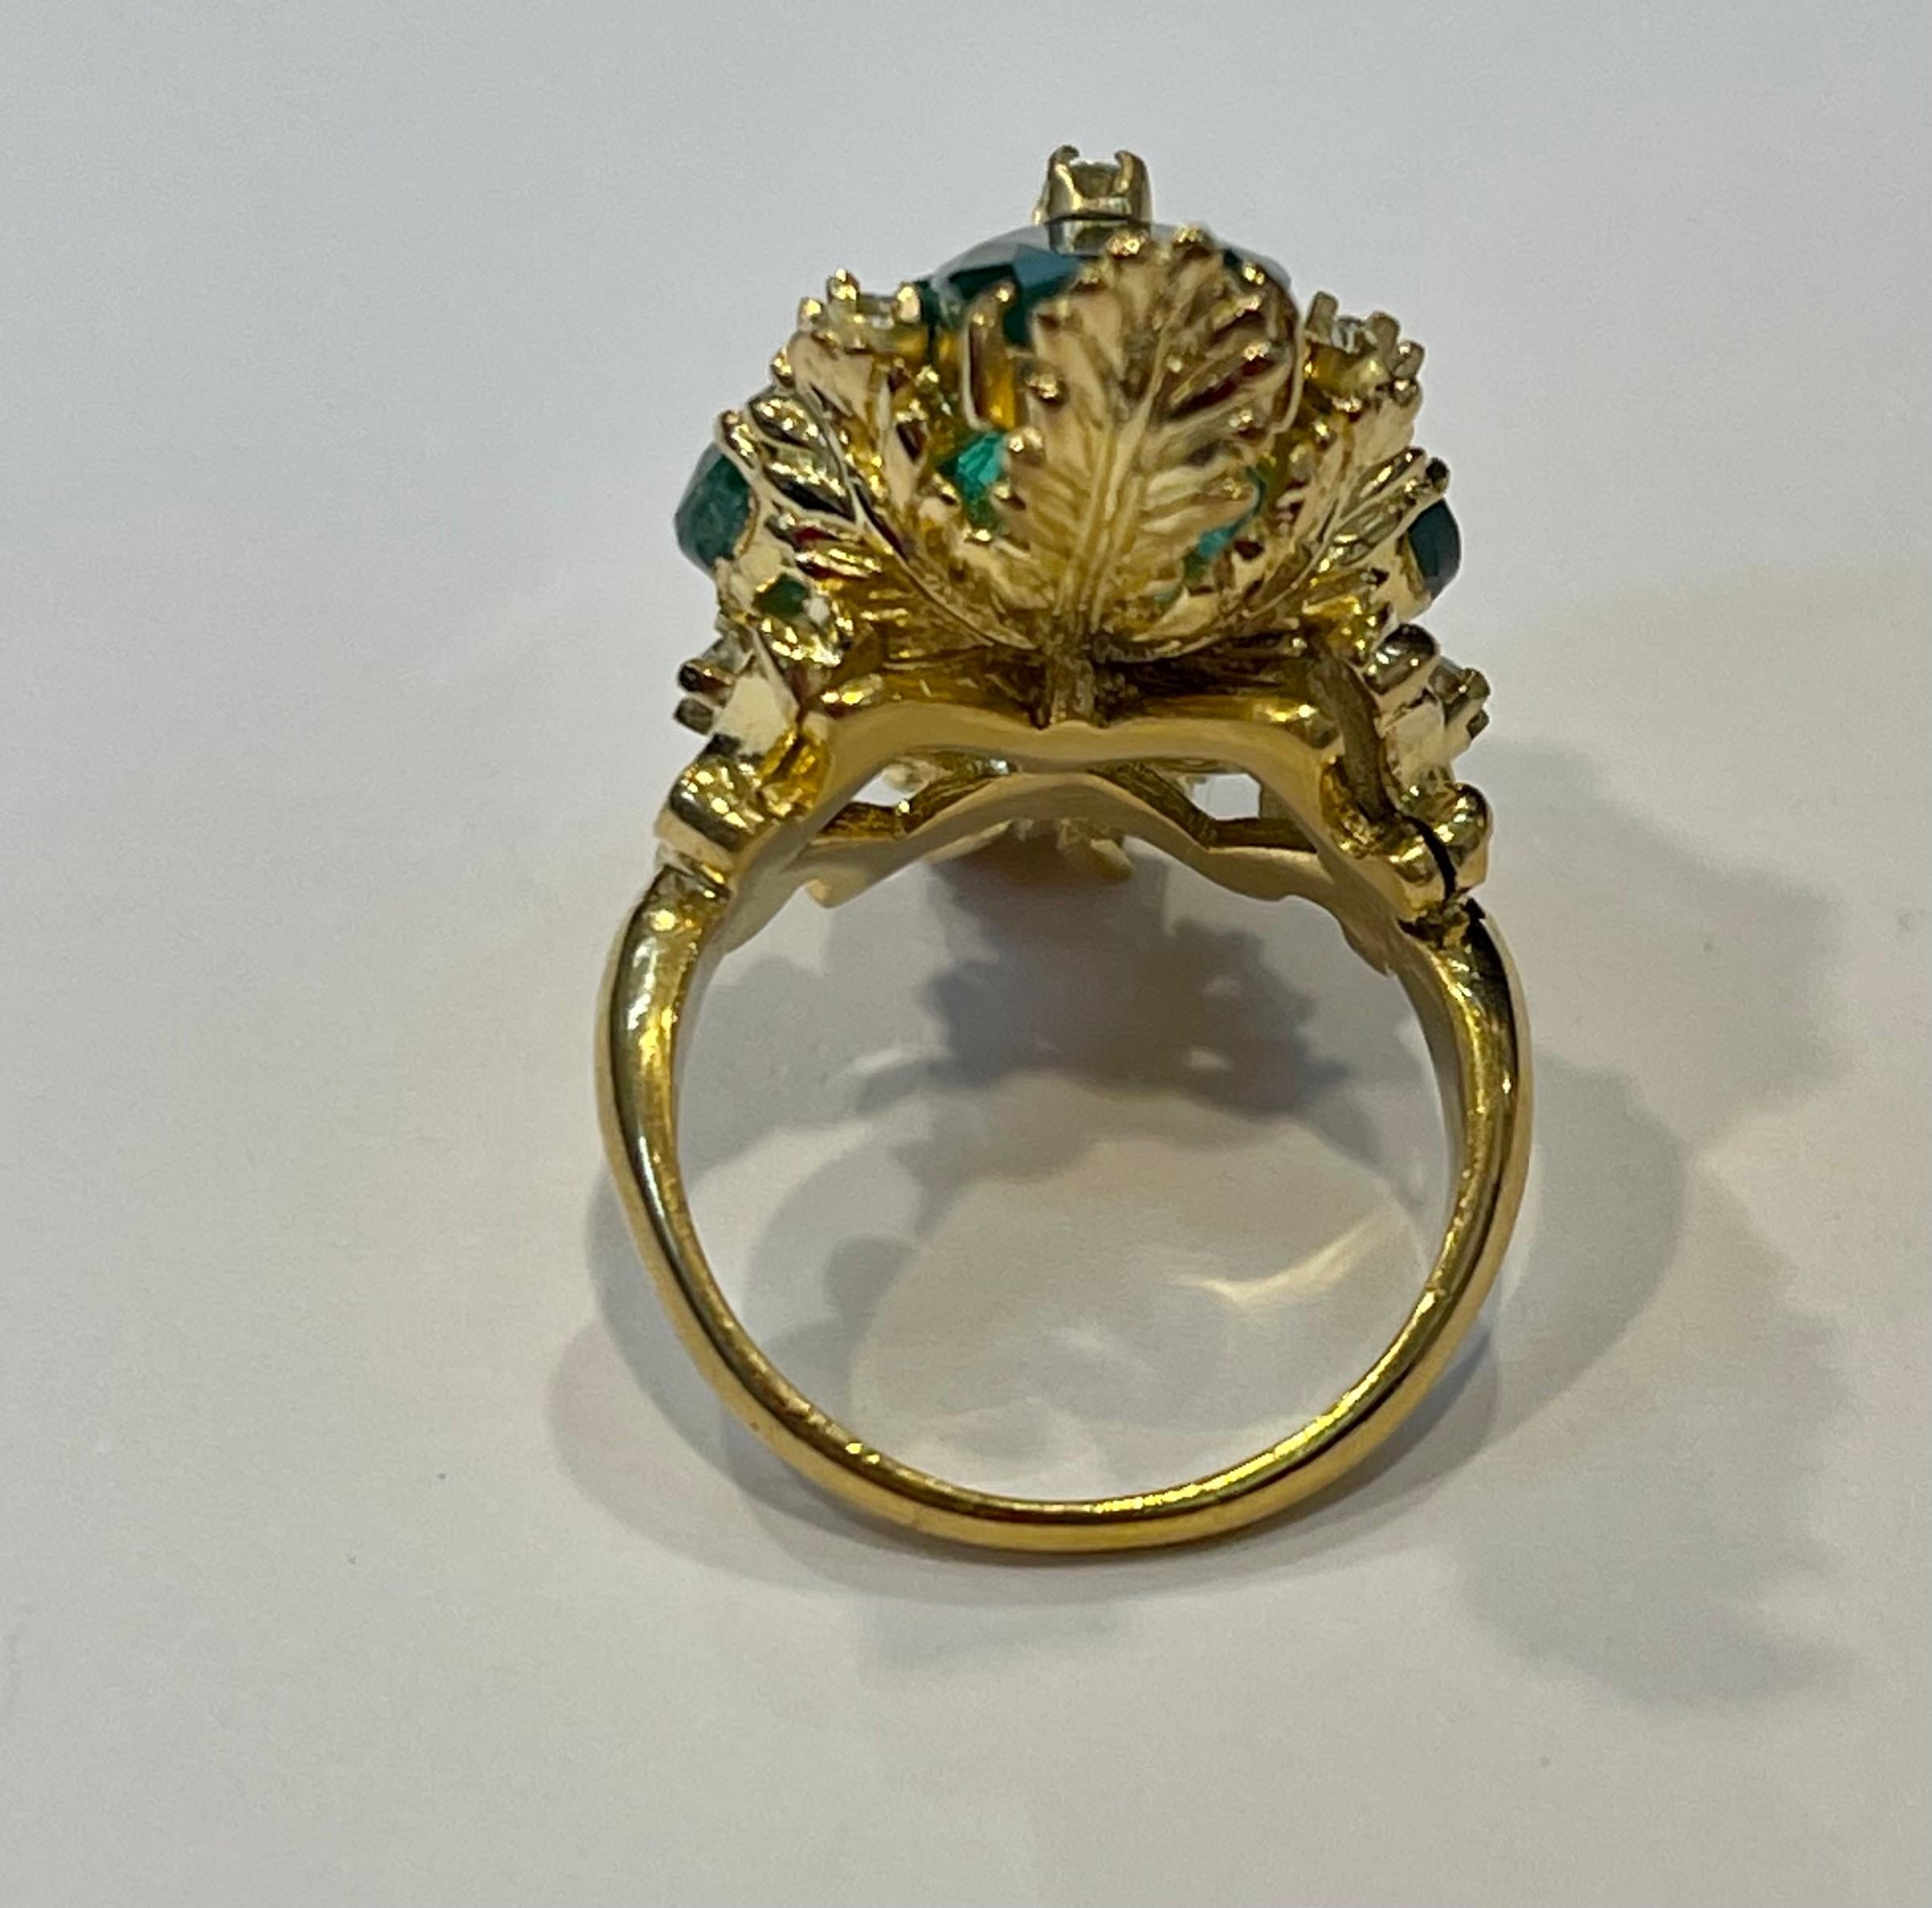 7.5 carat oval diamond ring